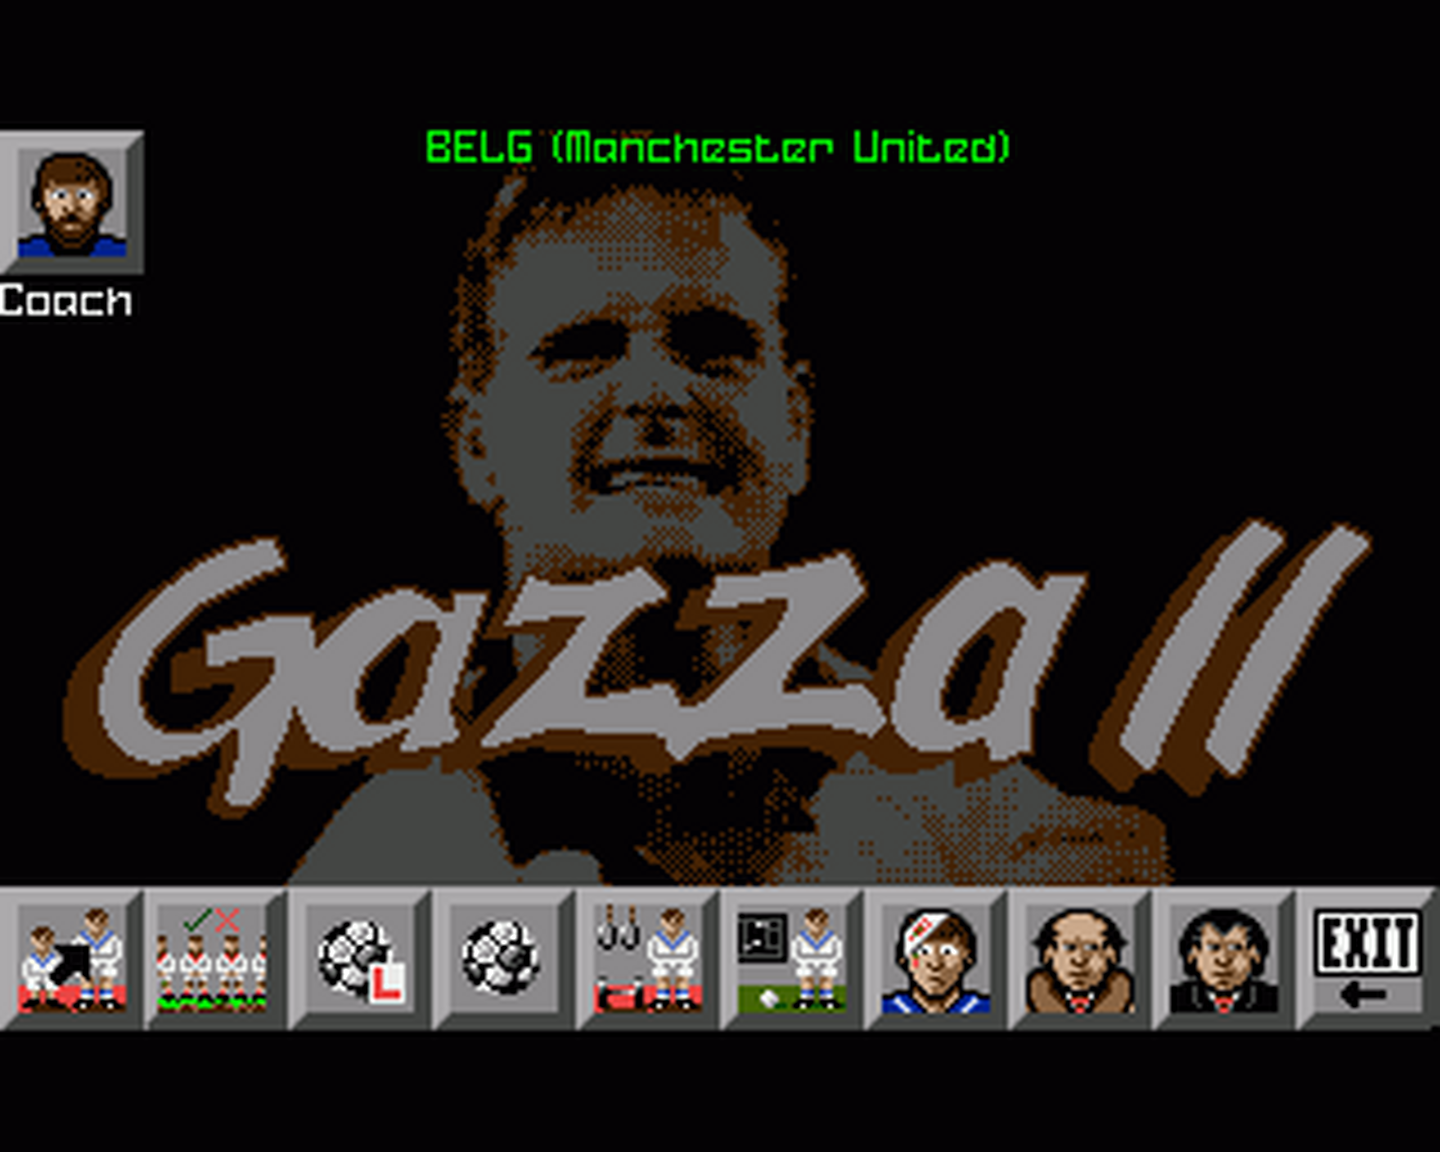 Amiga GameBase Gazza_II Empire 1991